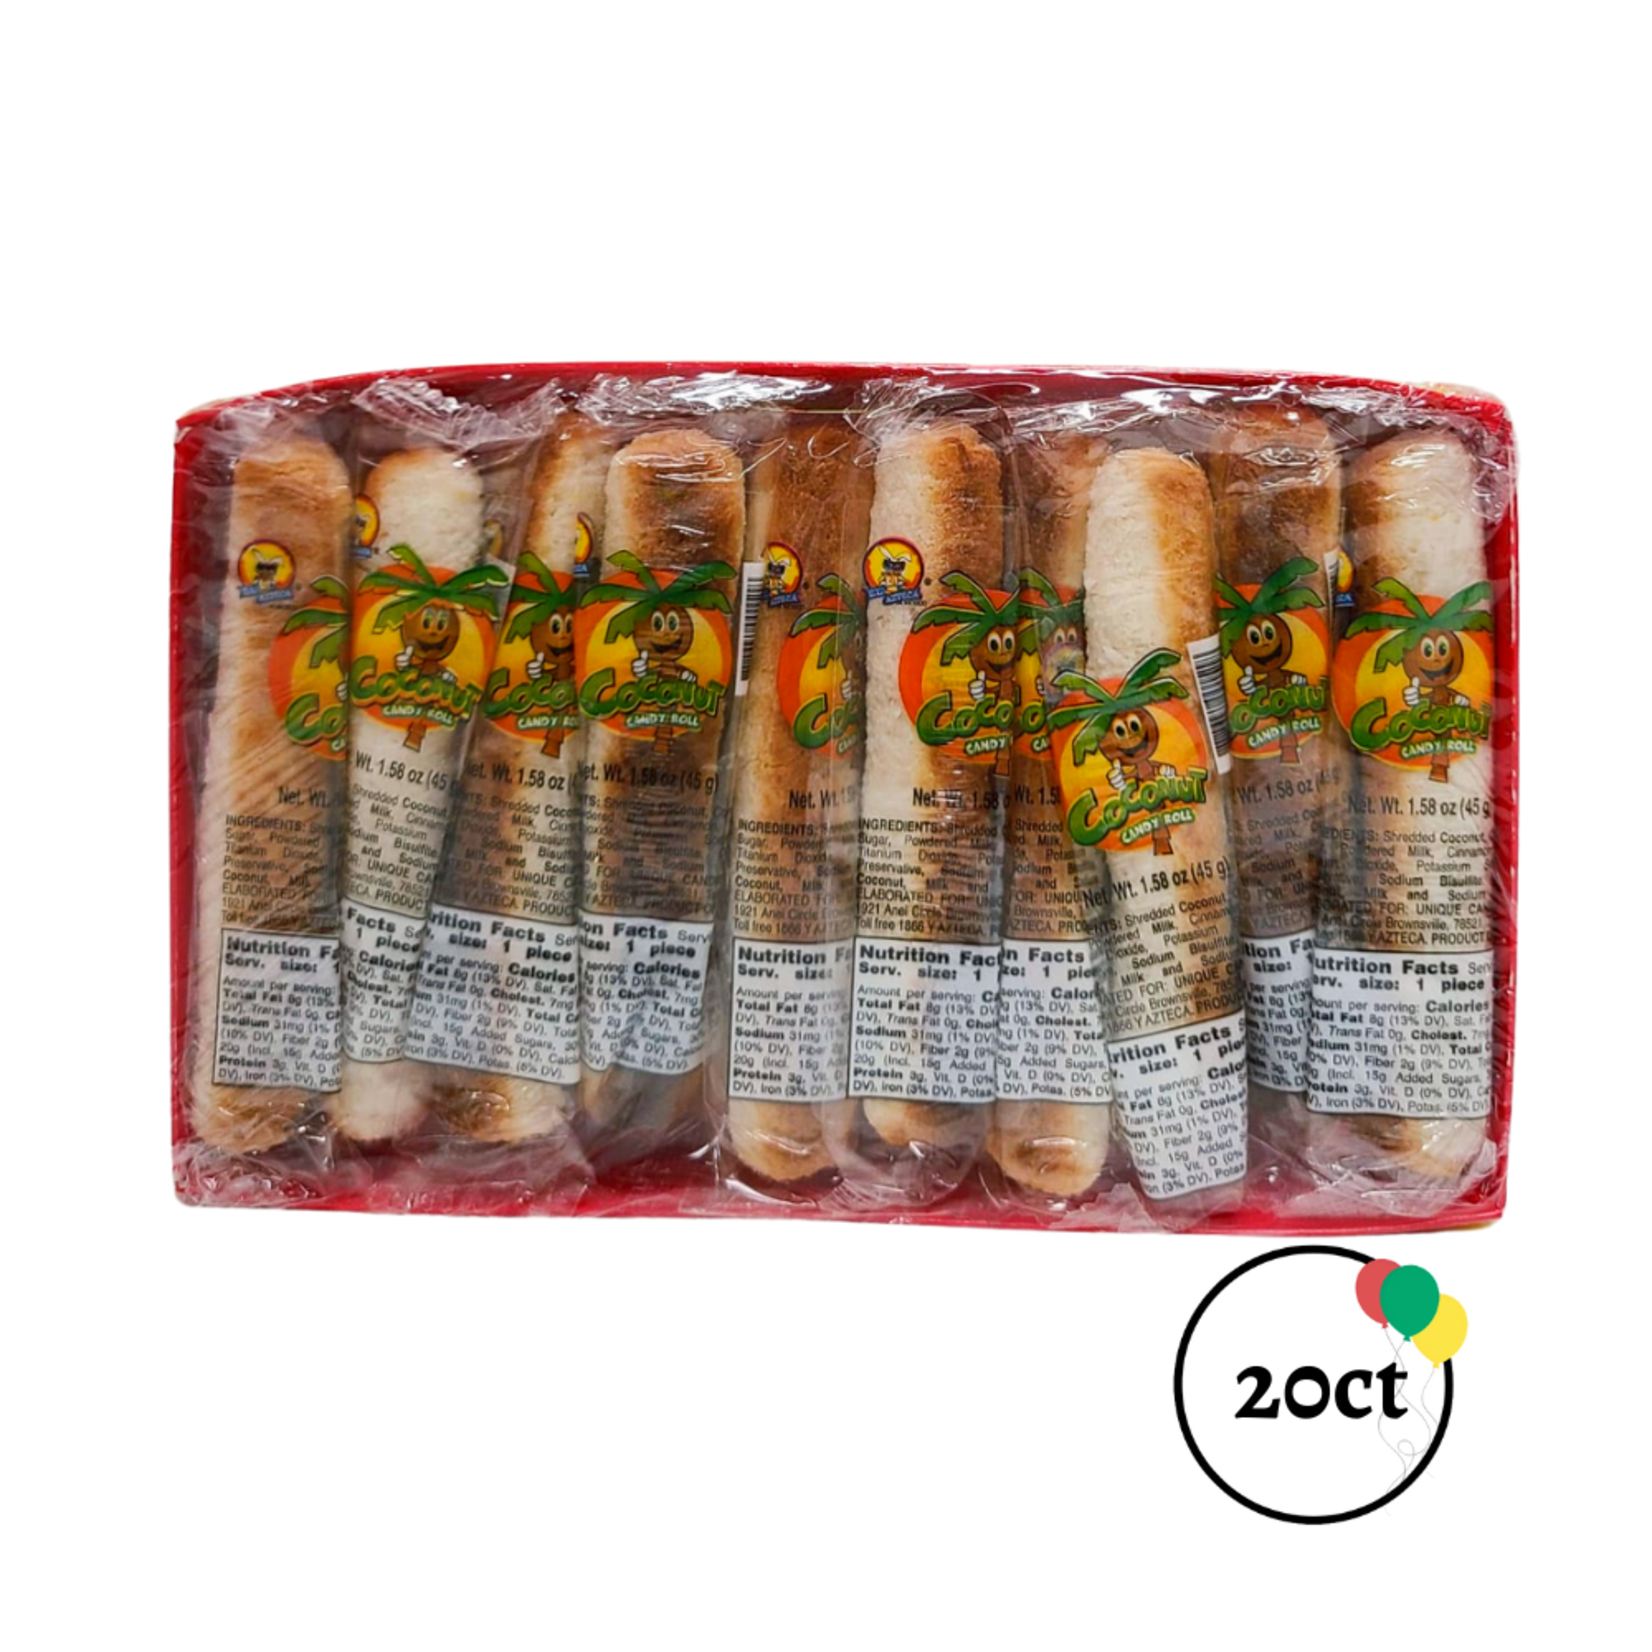 El Azteca Coconut Rolls / Rollos De Coco 20ct.